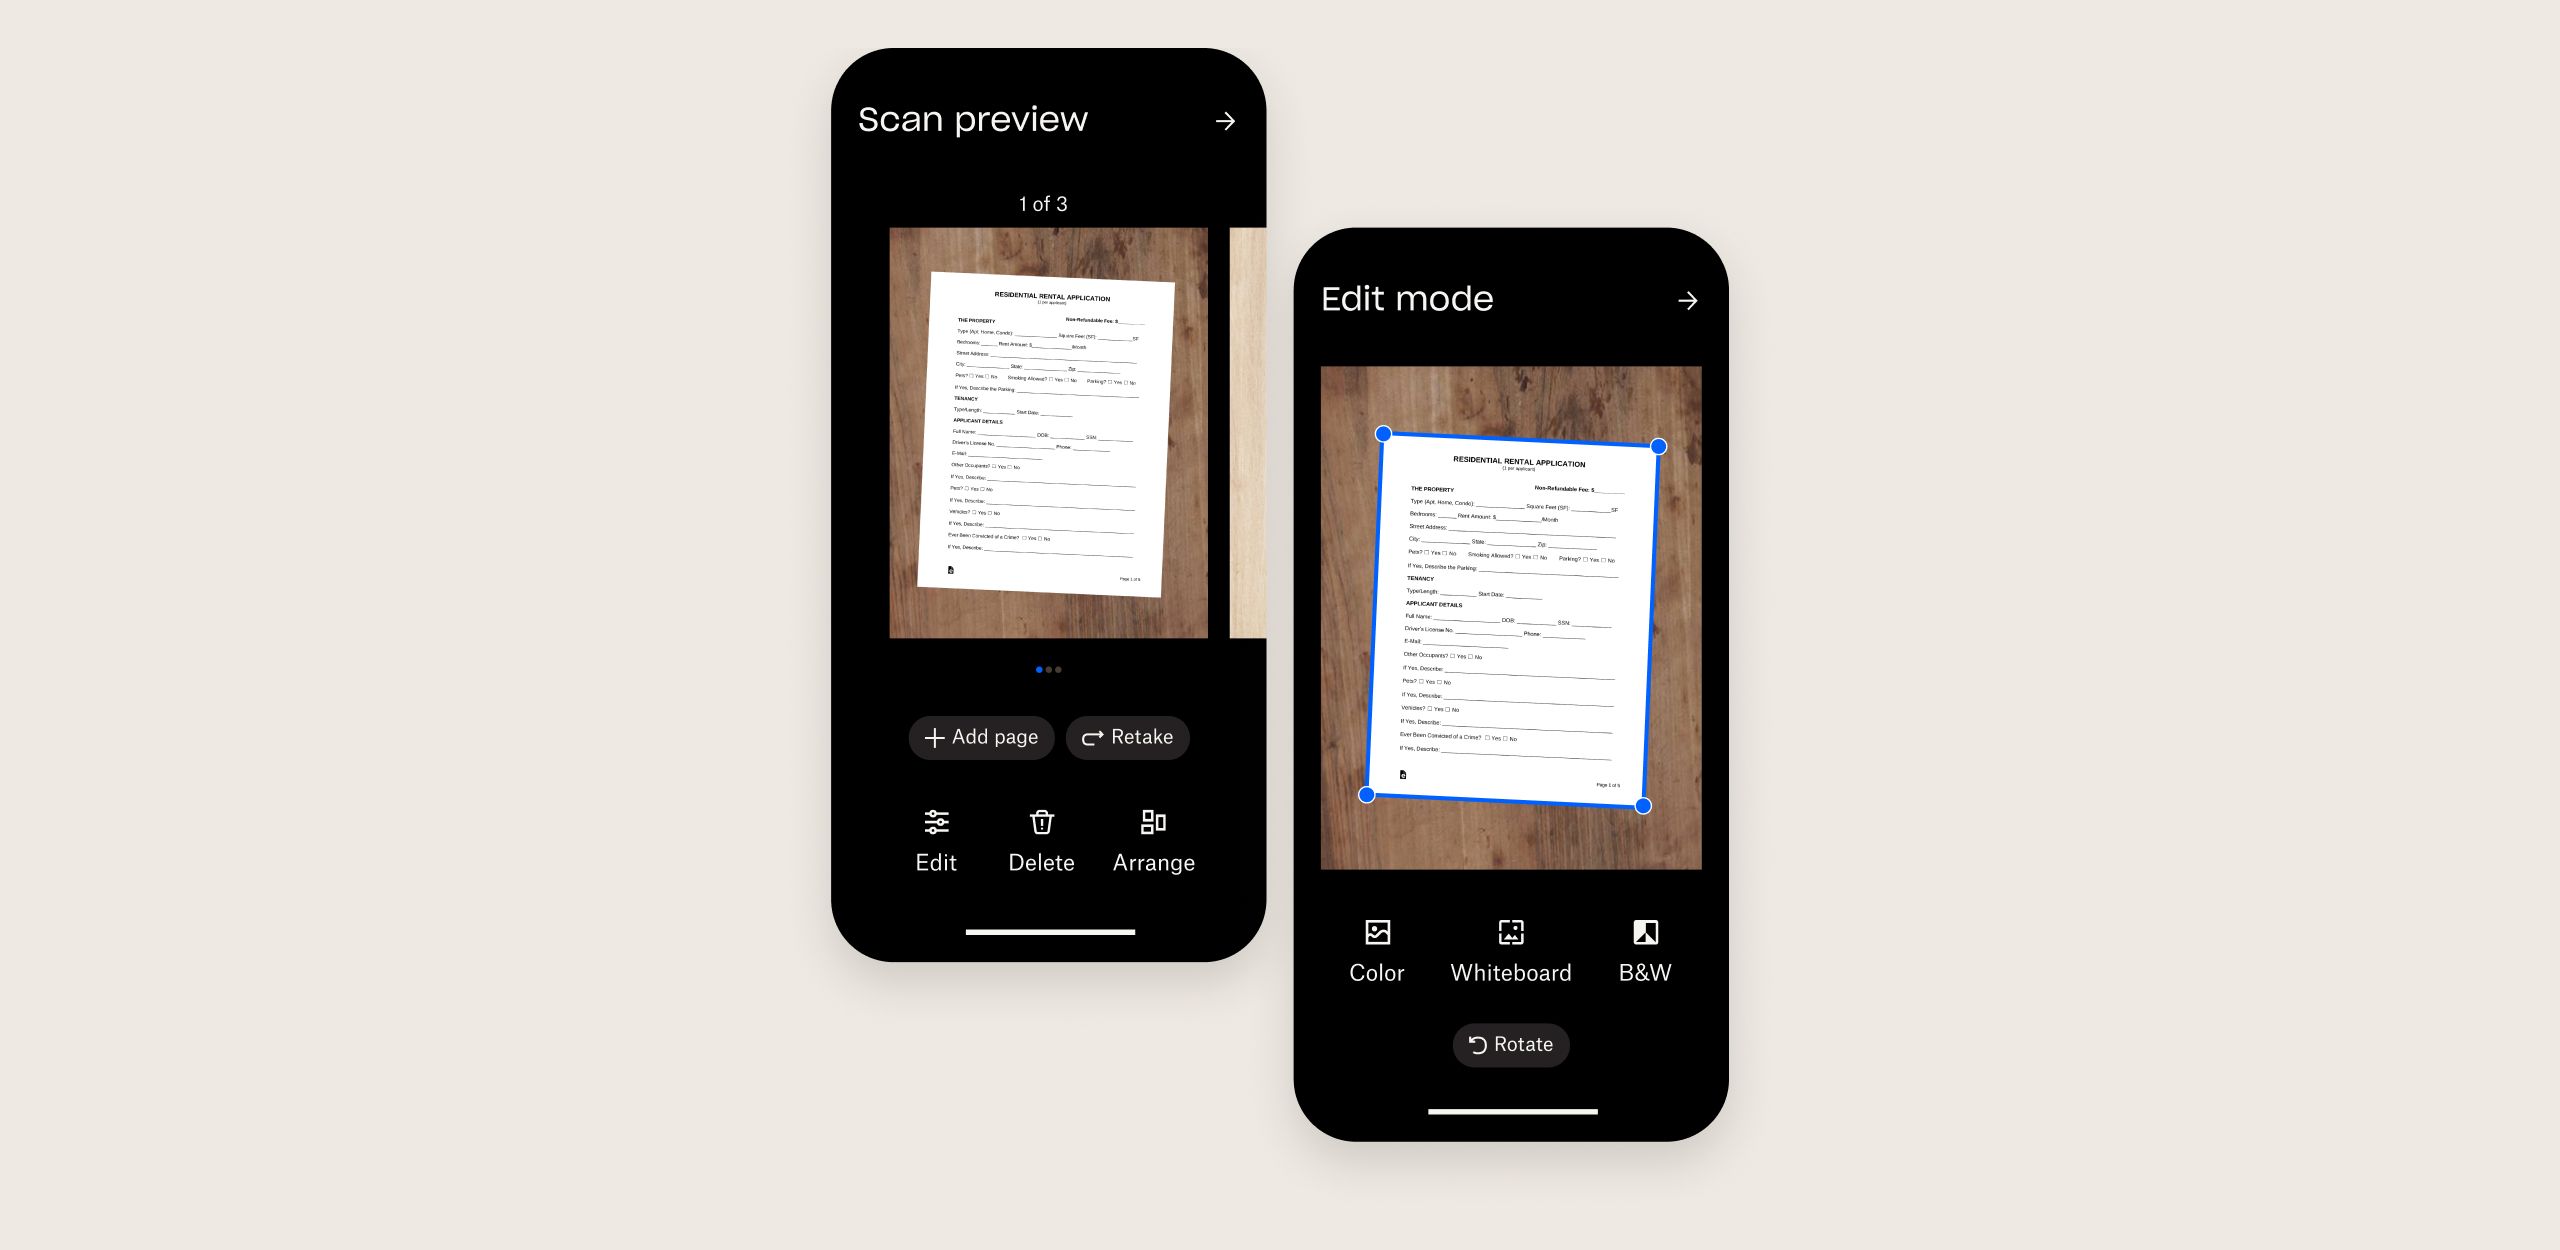 Twee mobiele schermen die het scannen van meerdere documenten laten zien